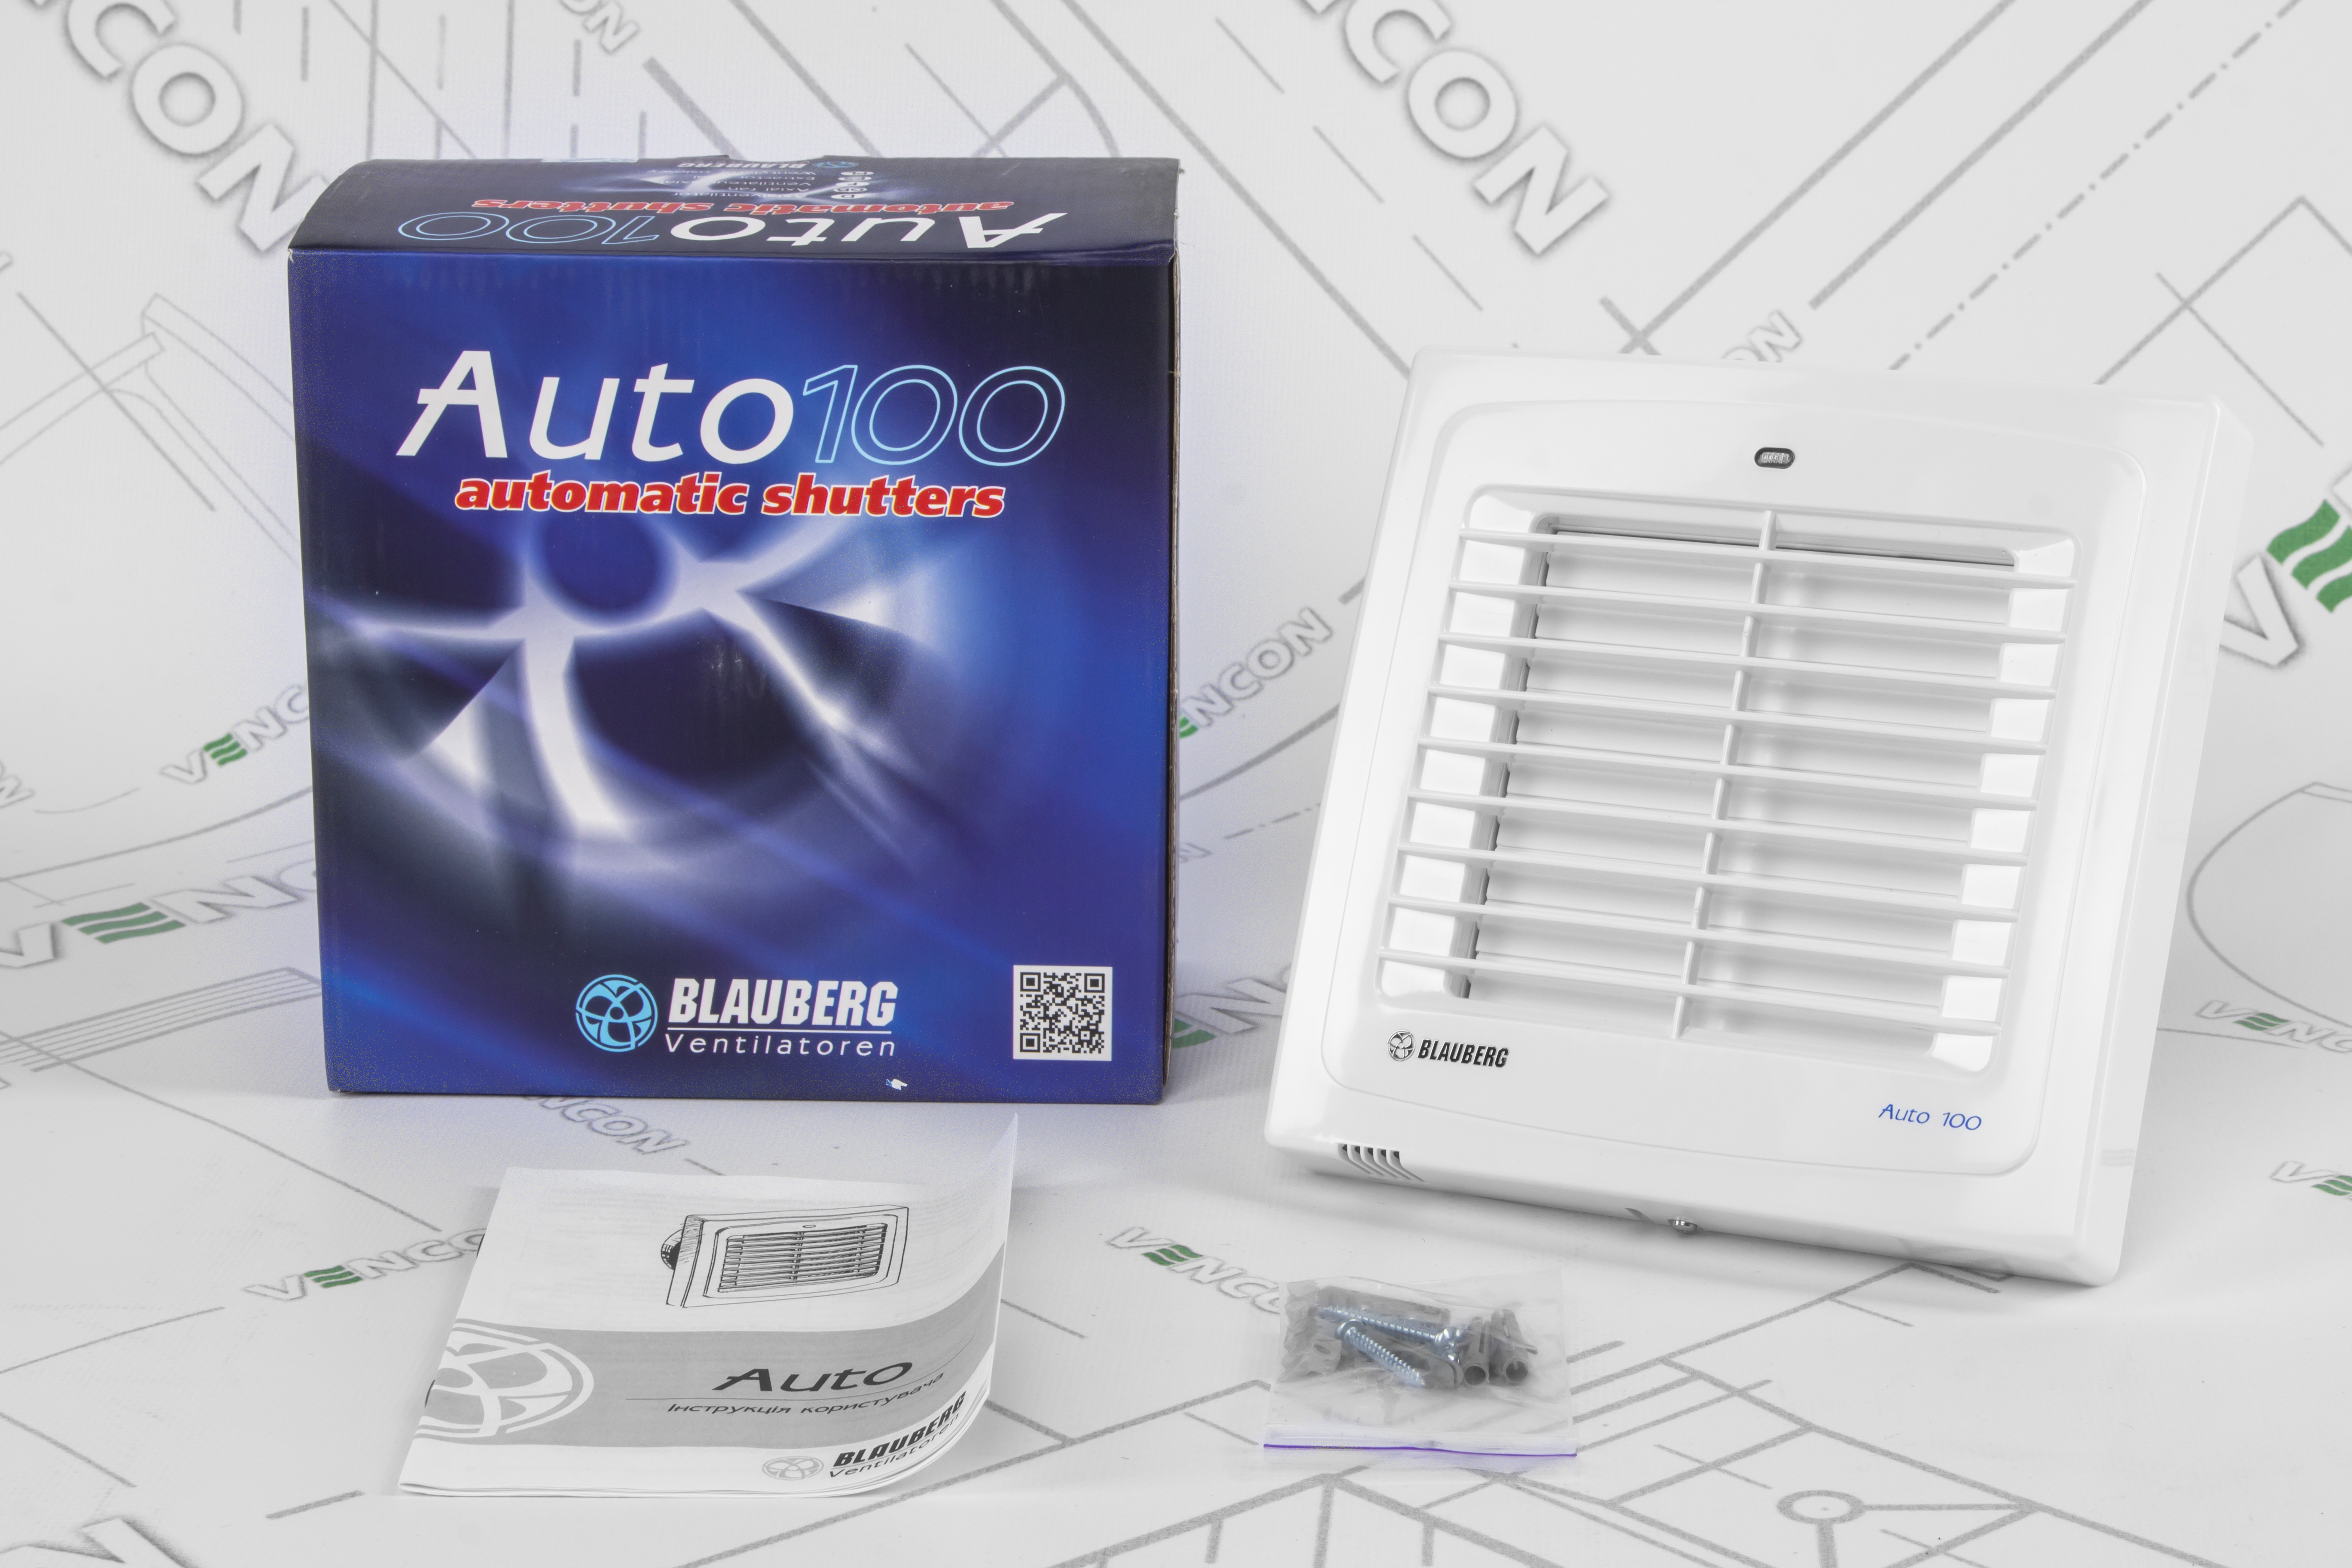 Вытяжной вентилятор Blauberg Auto 100 обзор - фото 11